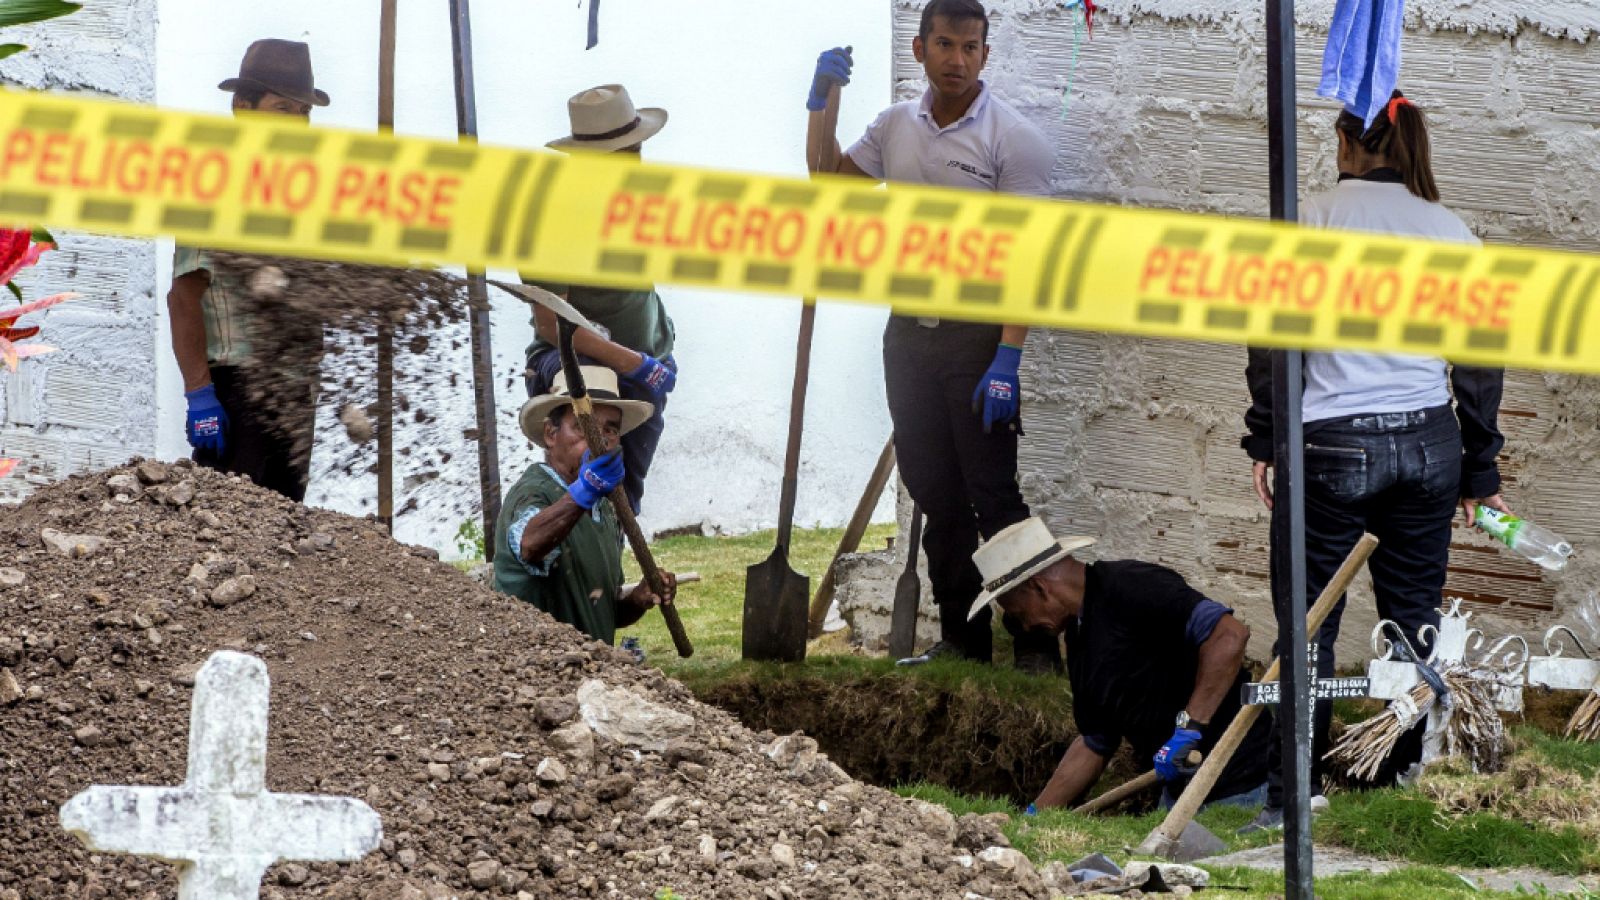 Cinco continentes - Colombia: exhumaciones y falsos positivos - Escuchar ahora